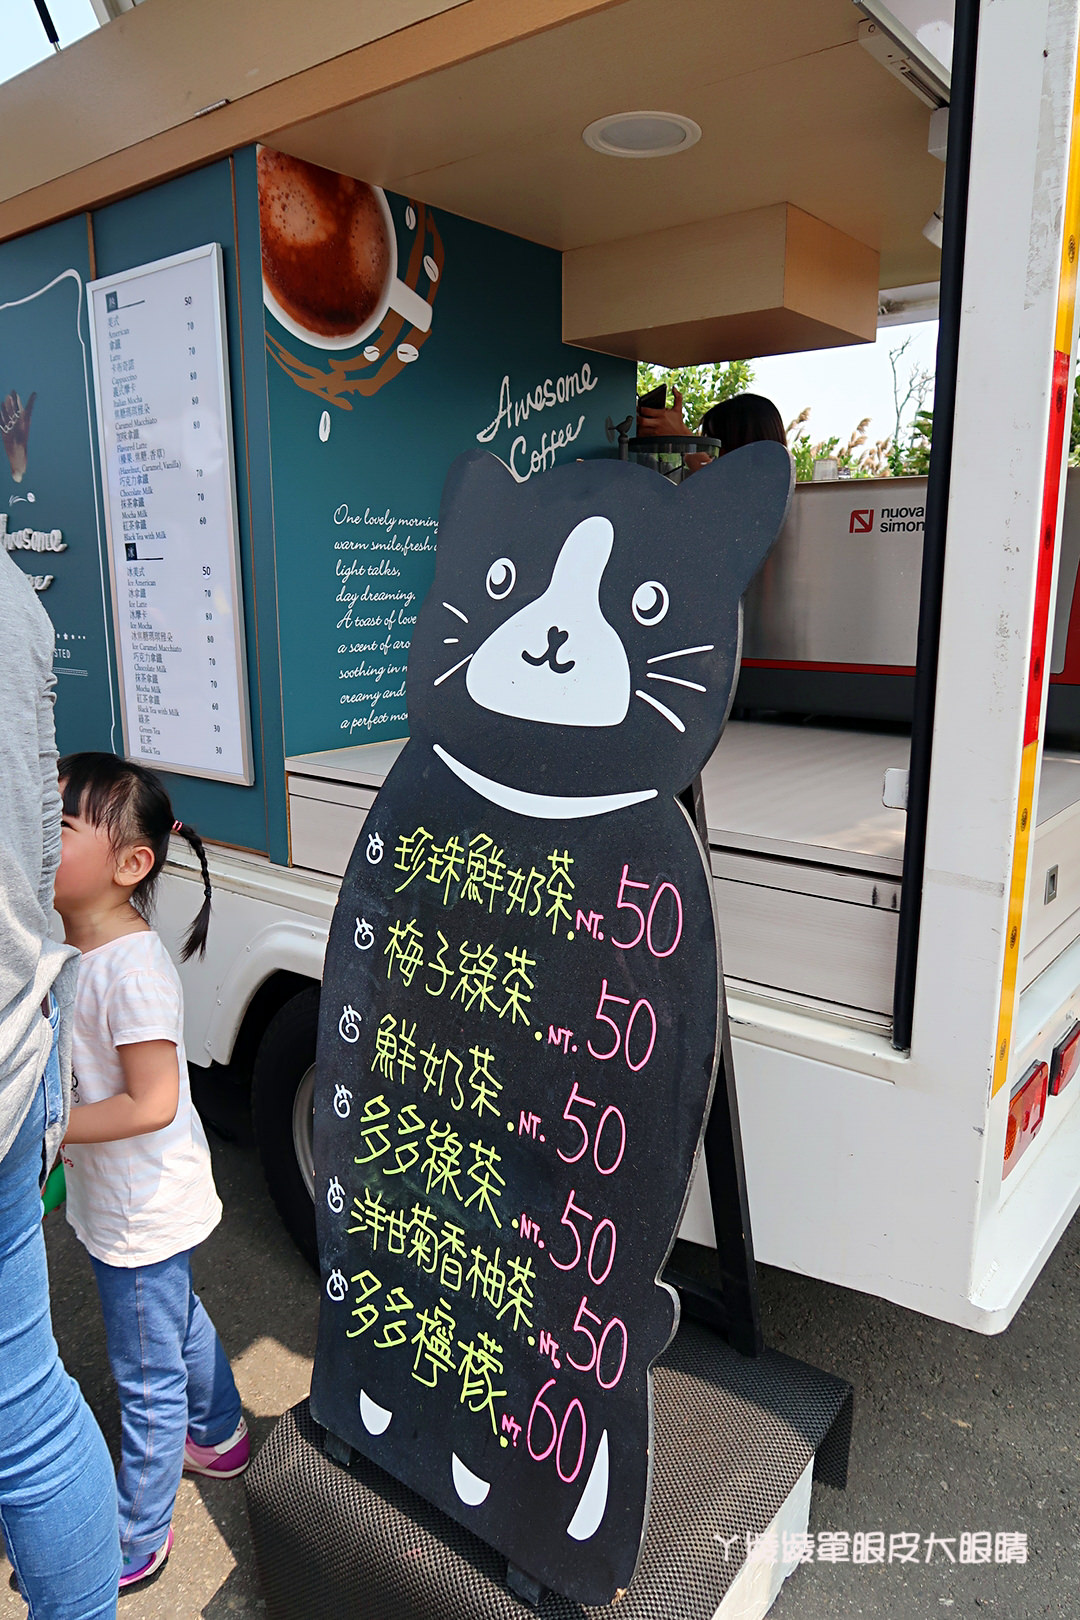 新竹市兒童藝術節懶人包！風的運動場活動時間、接駁車交通管制、新竹美食小吃整理、現場照片紀錄